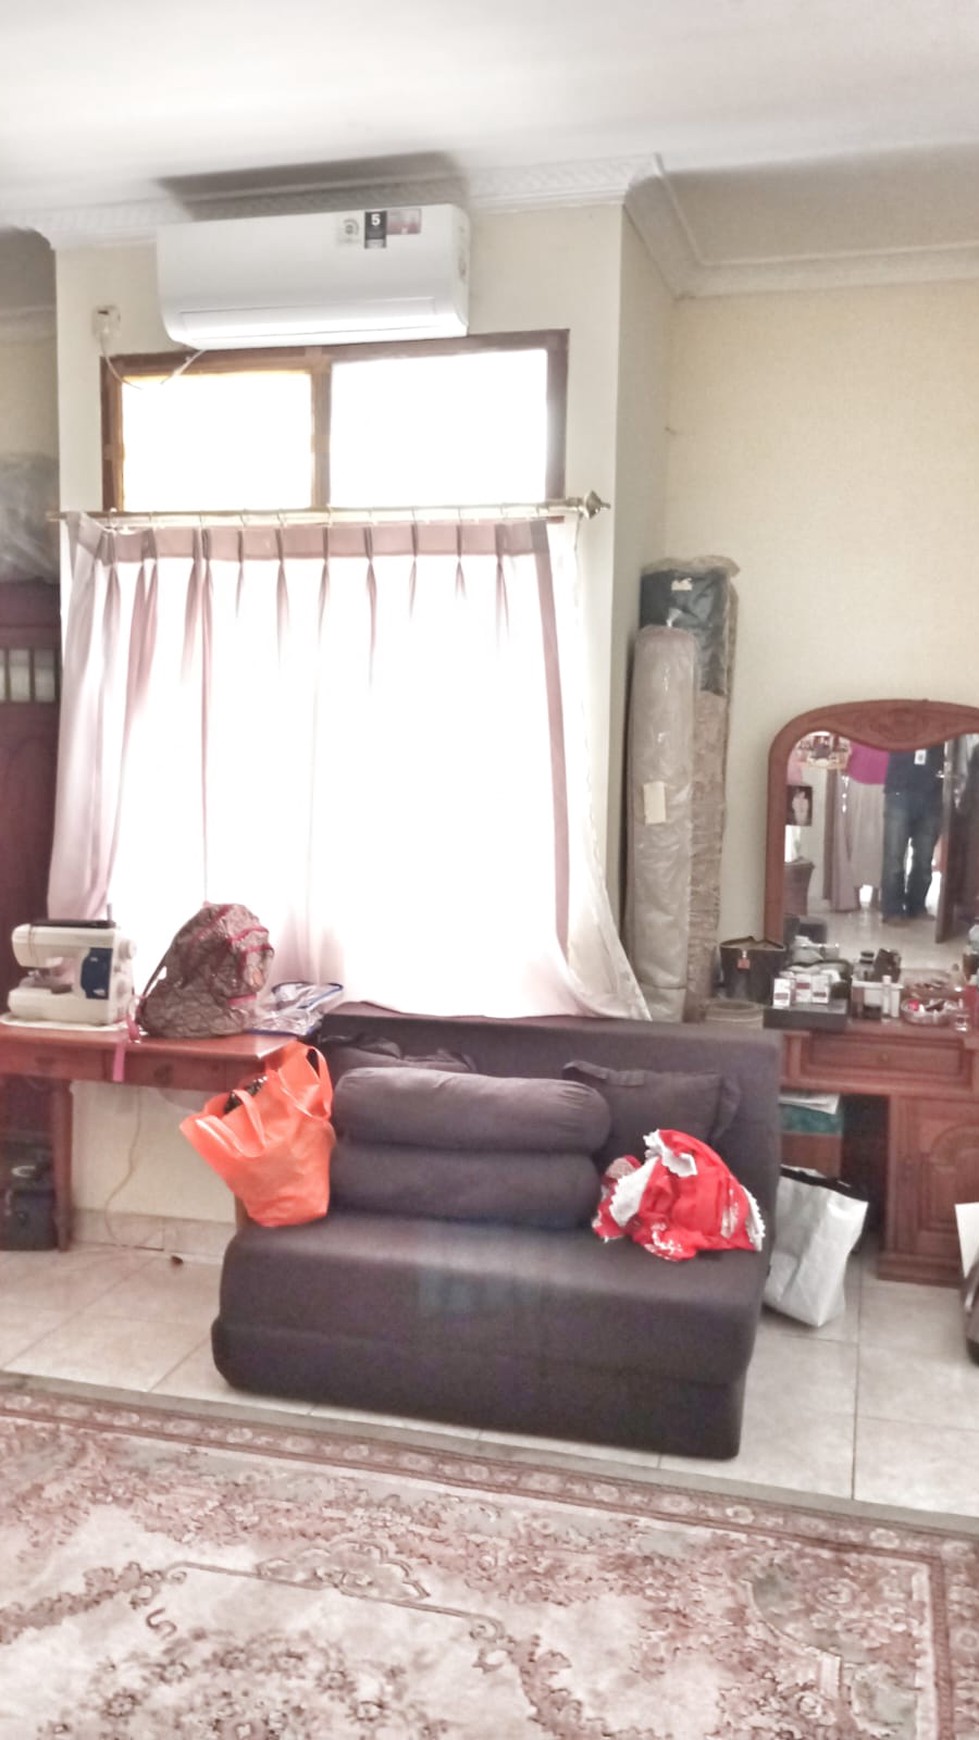 Rumah Tanah Kusir Posisi Pojok Kondisi Furnish Siap Huni #DG